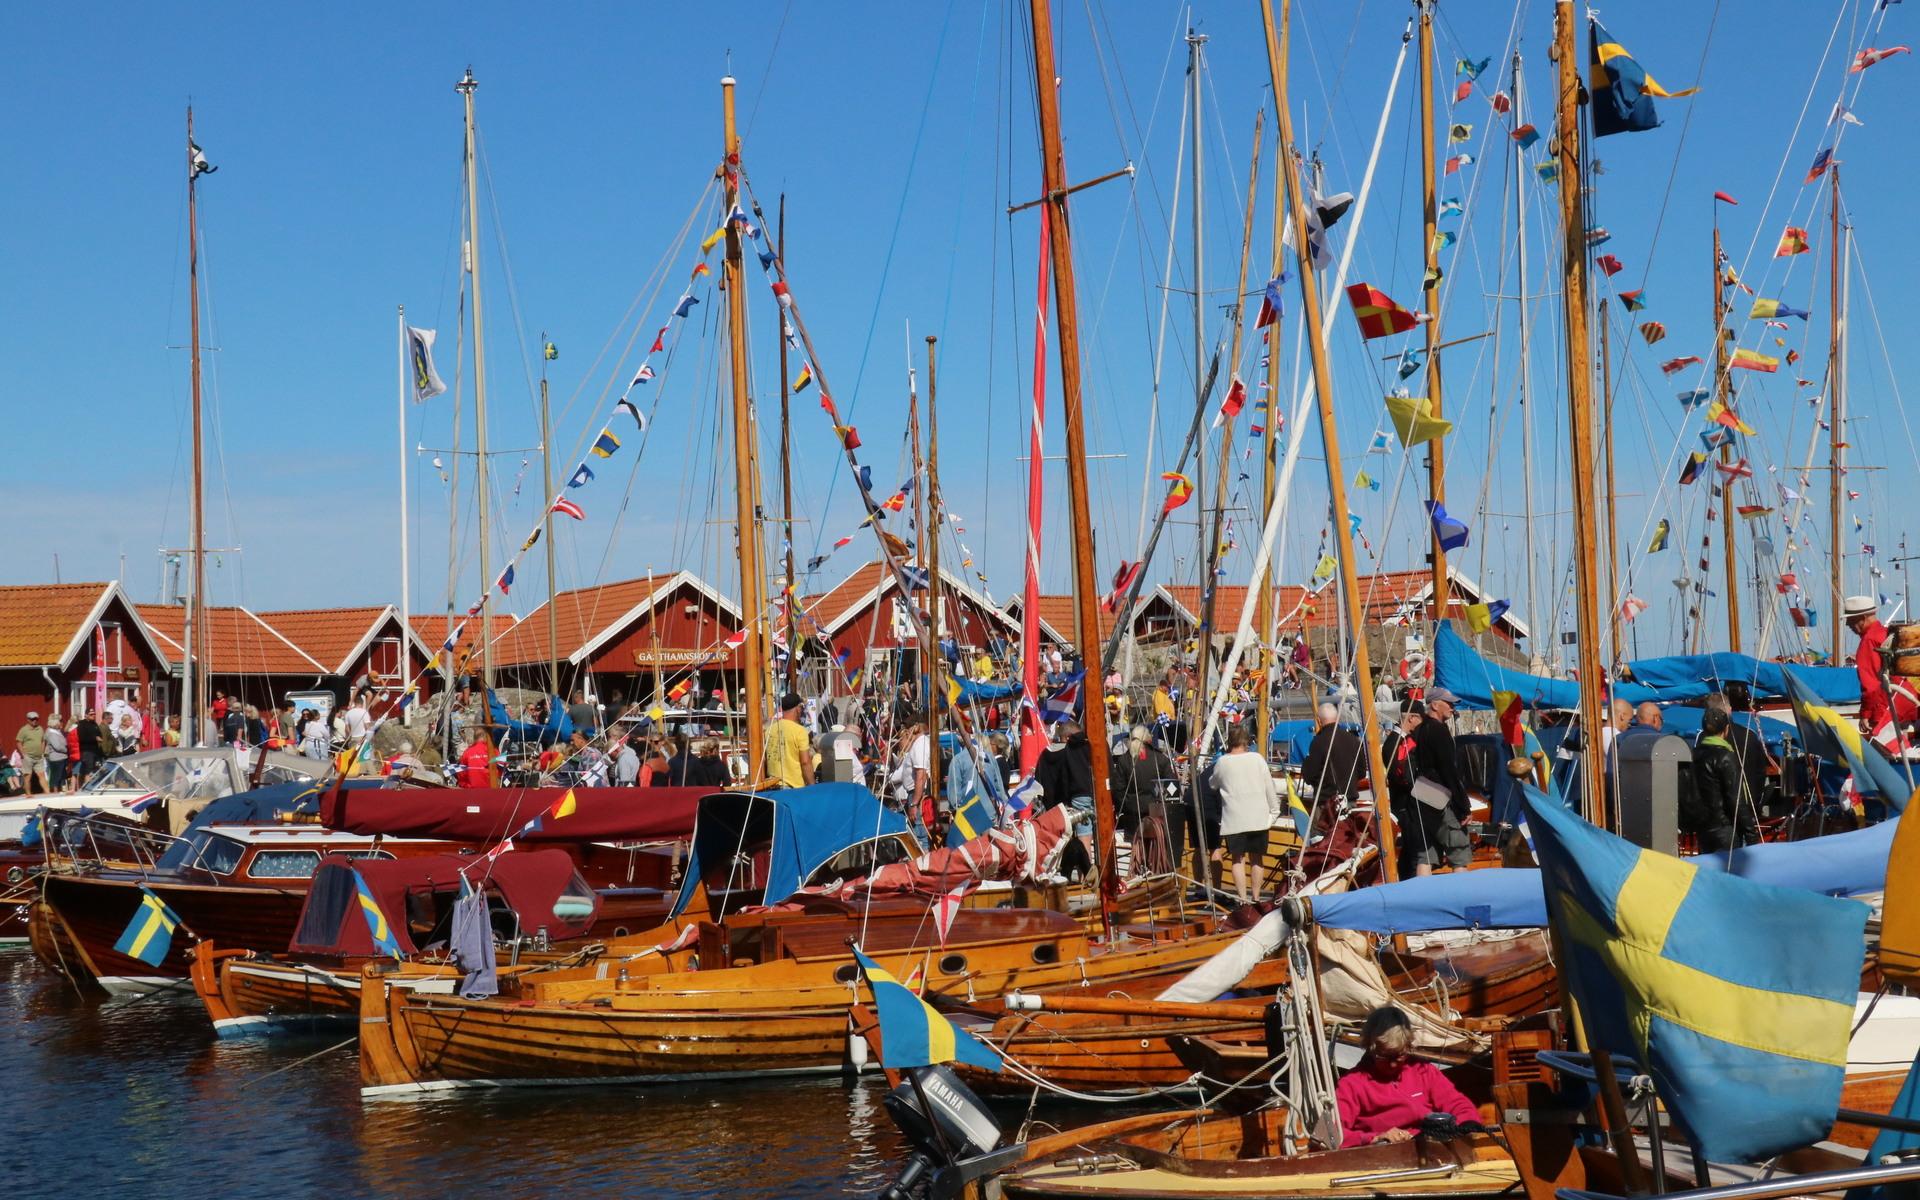 Sol, vatten och vackra båtar, årets upplaga av träbåtsfestivalen blev mycket lyckad. 